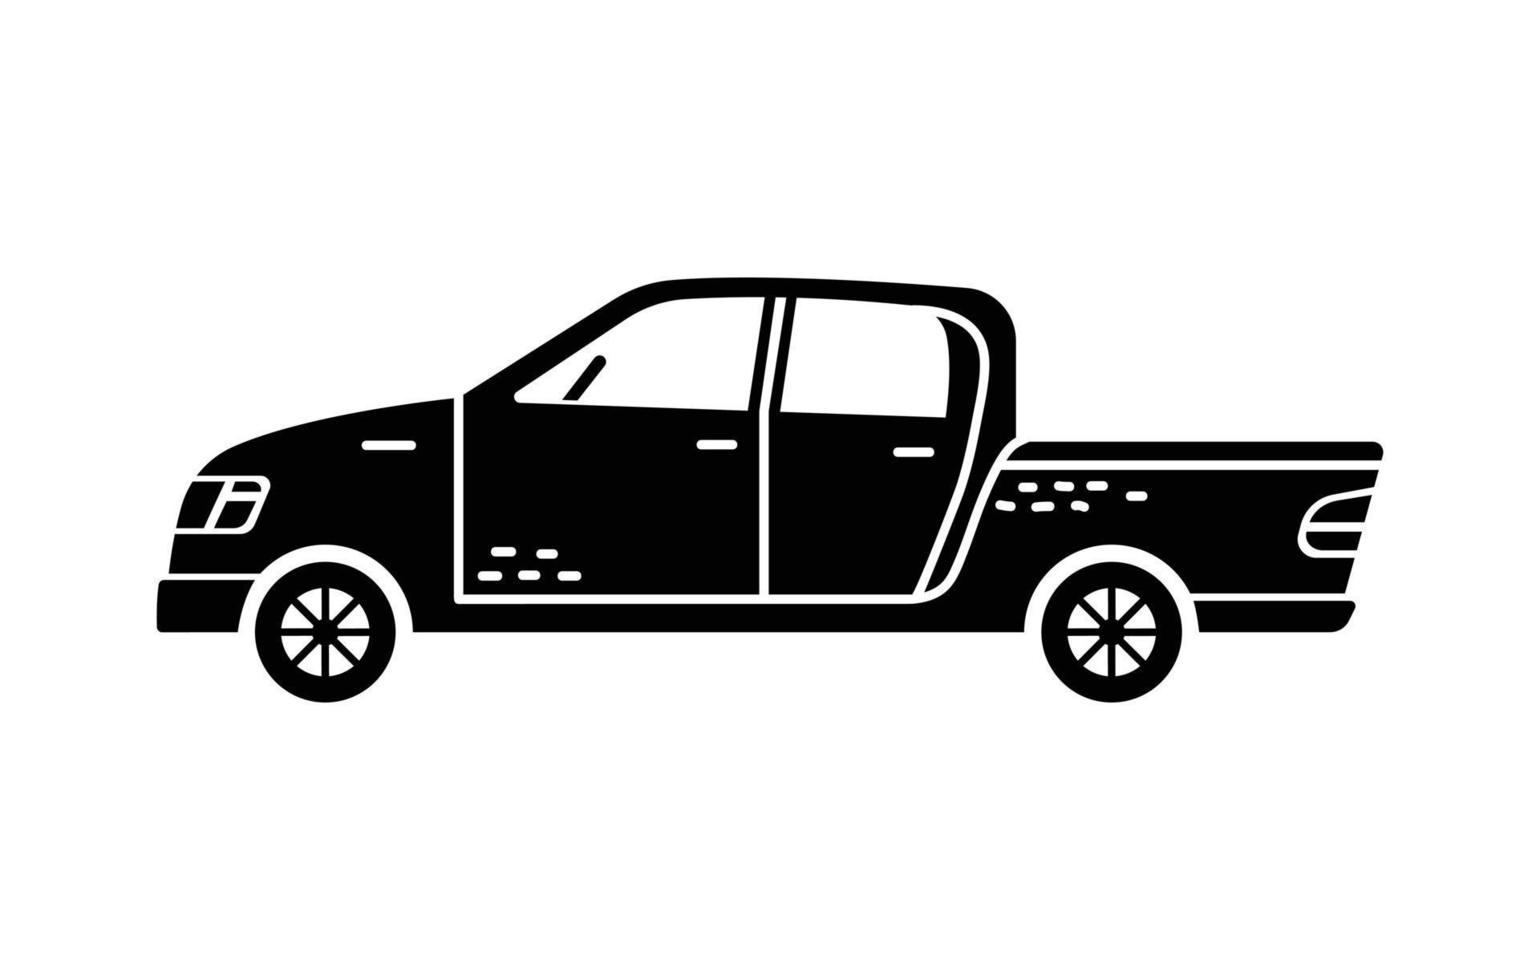 ilustración vectorial dibujada a mano de un coche. vehículos personales. vector